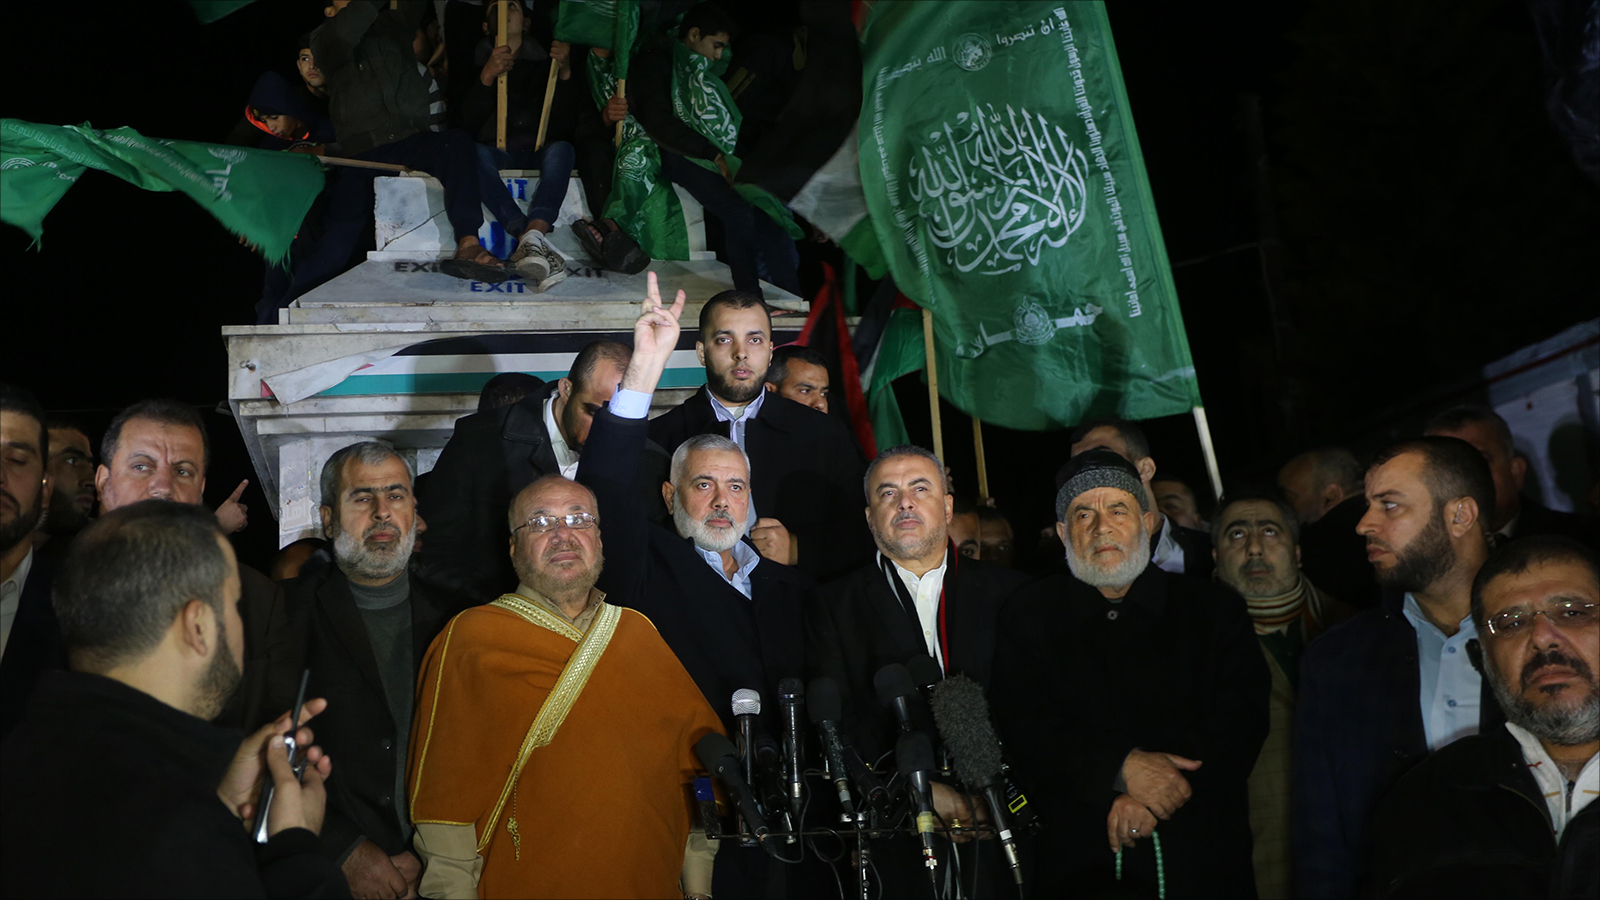 بات جليا أن حماس كانت القدحة المعنوية الكبرى في وقتنا الحاضر لكي الوعي للشعب الفلسطيني وللأمة العربية والإسلامية، لذلك حق لها أن تستحوذ القلوب وتنال ثقة شعبها وأمتها